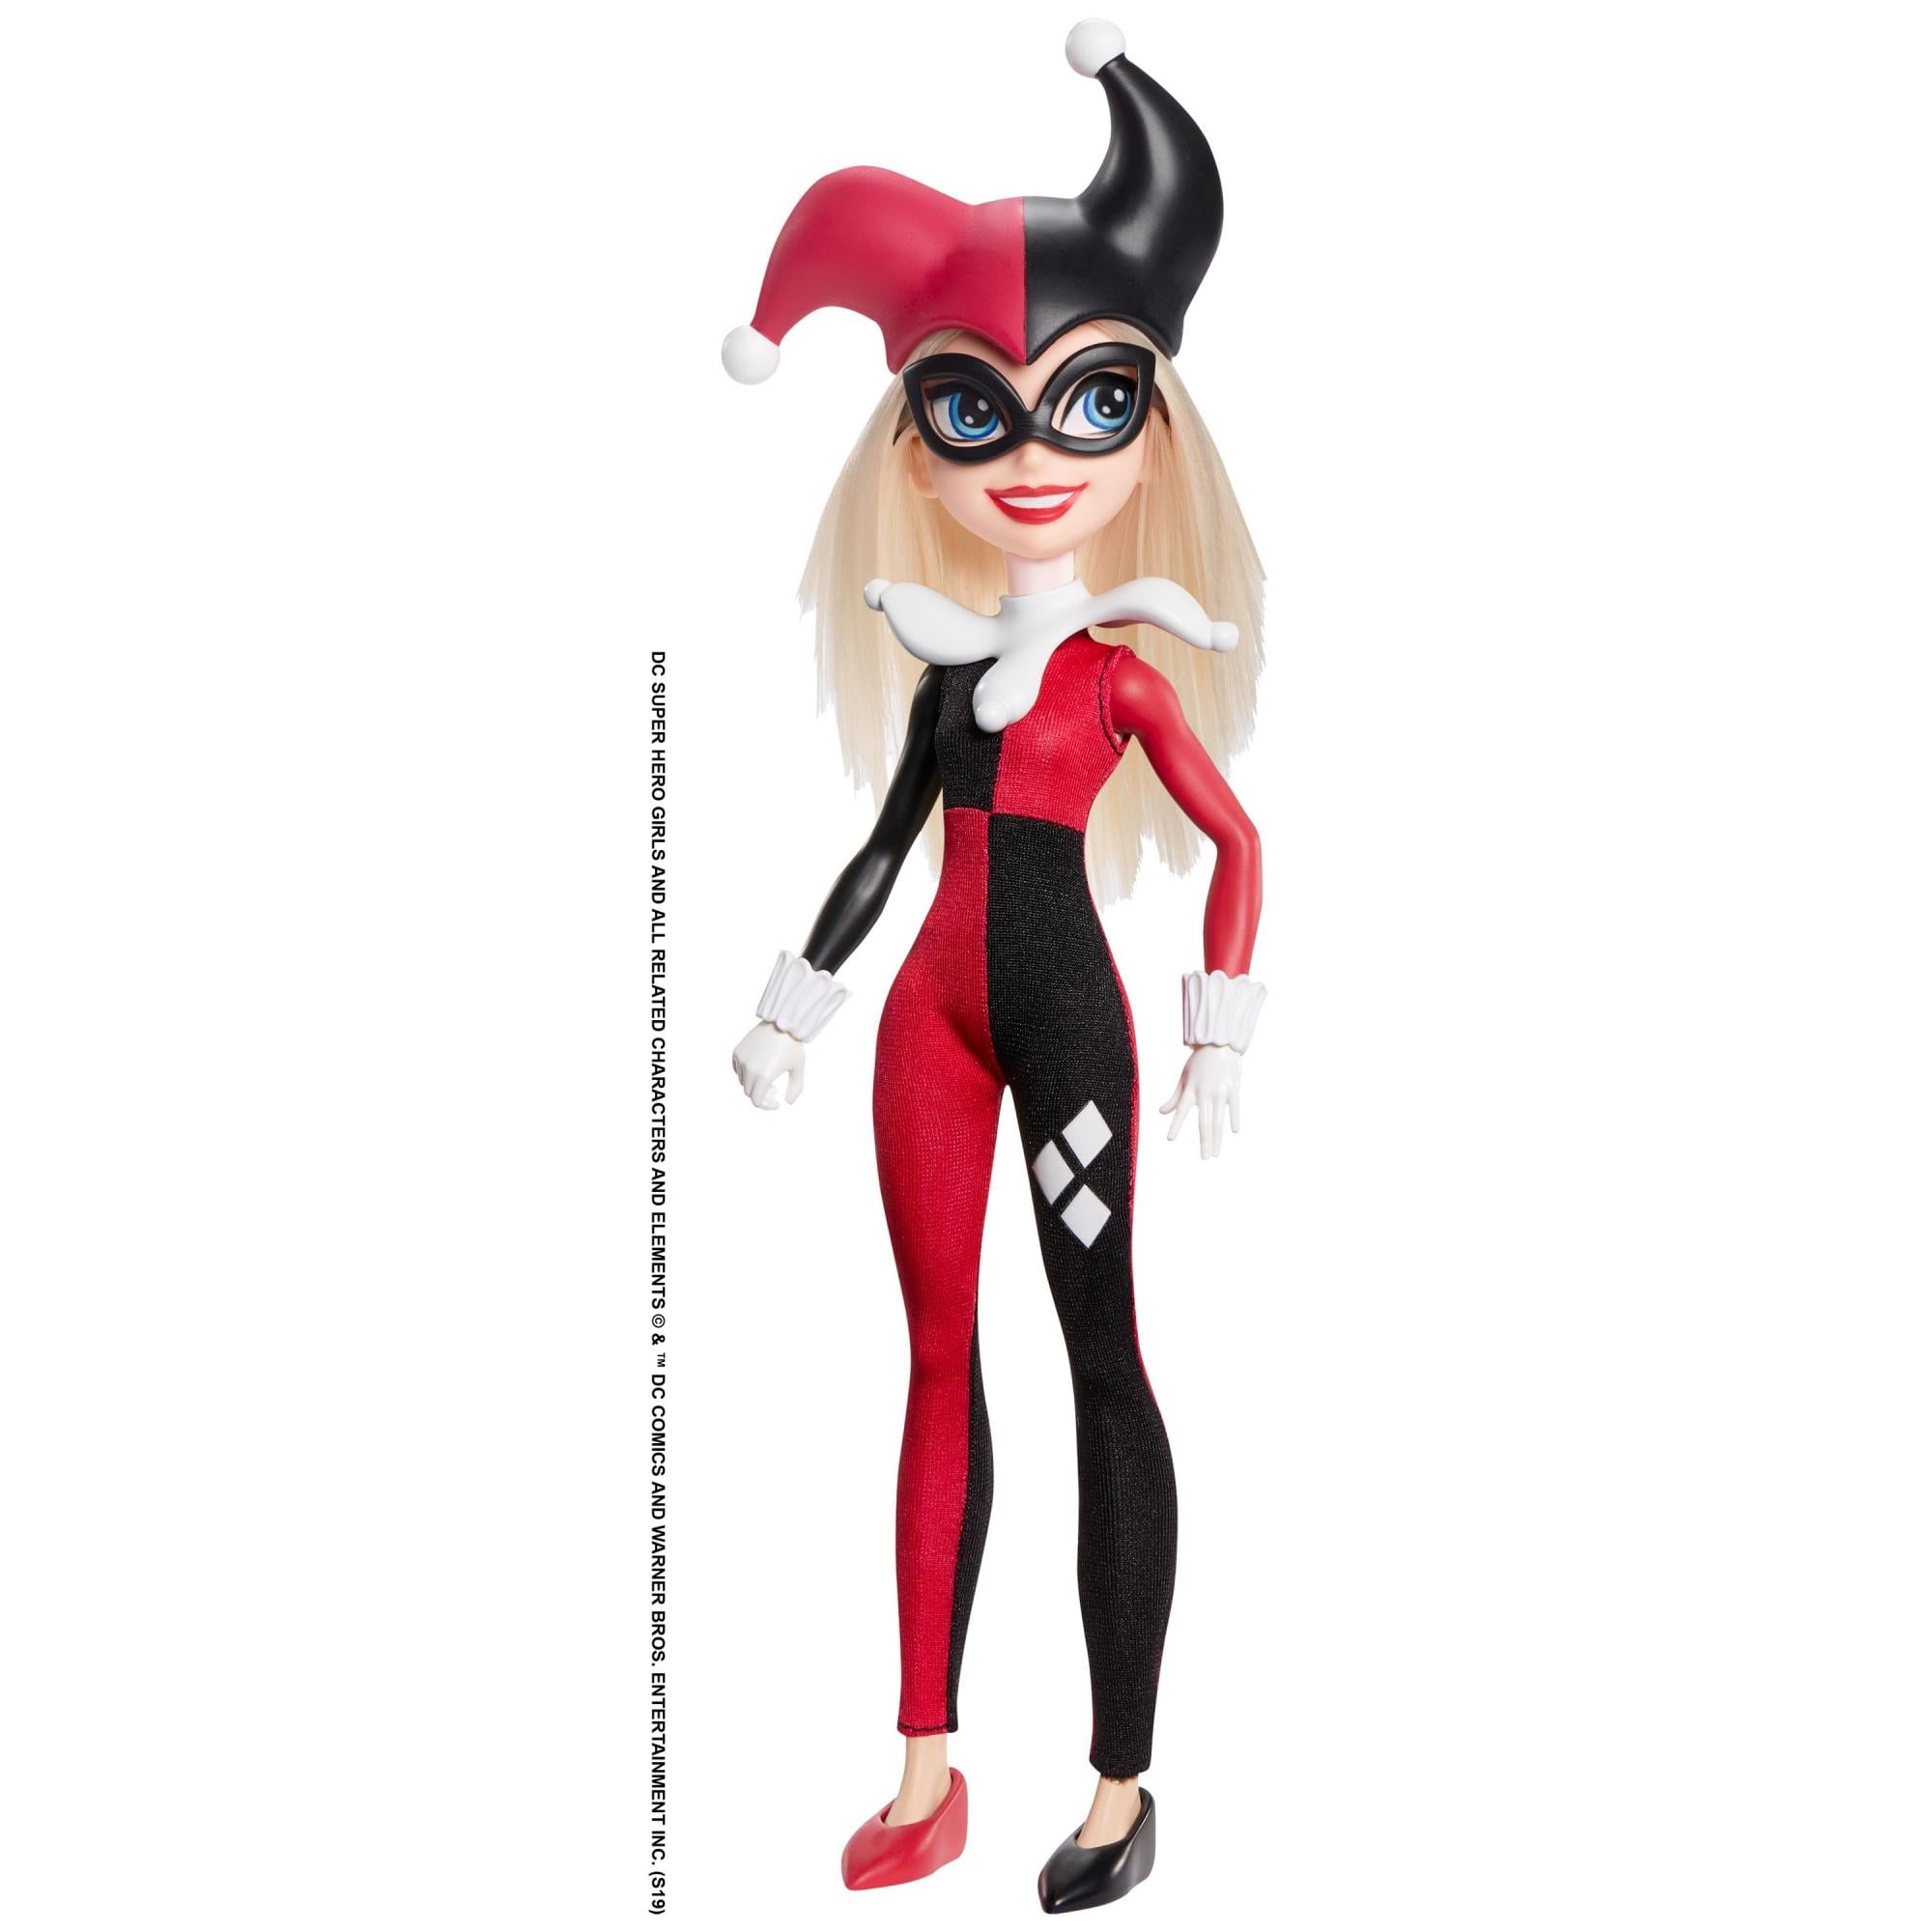 DC Super Hero Girls Harley Quinn 12" Action Doll 